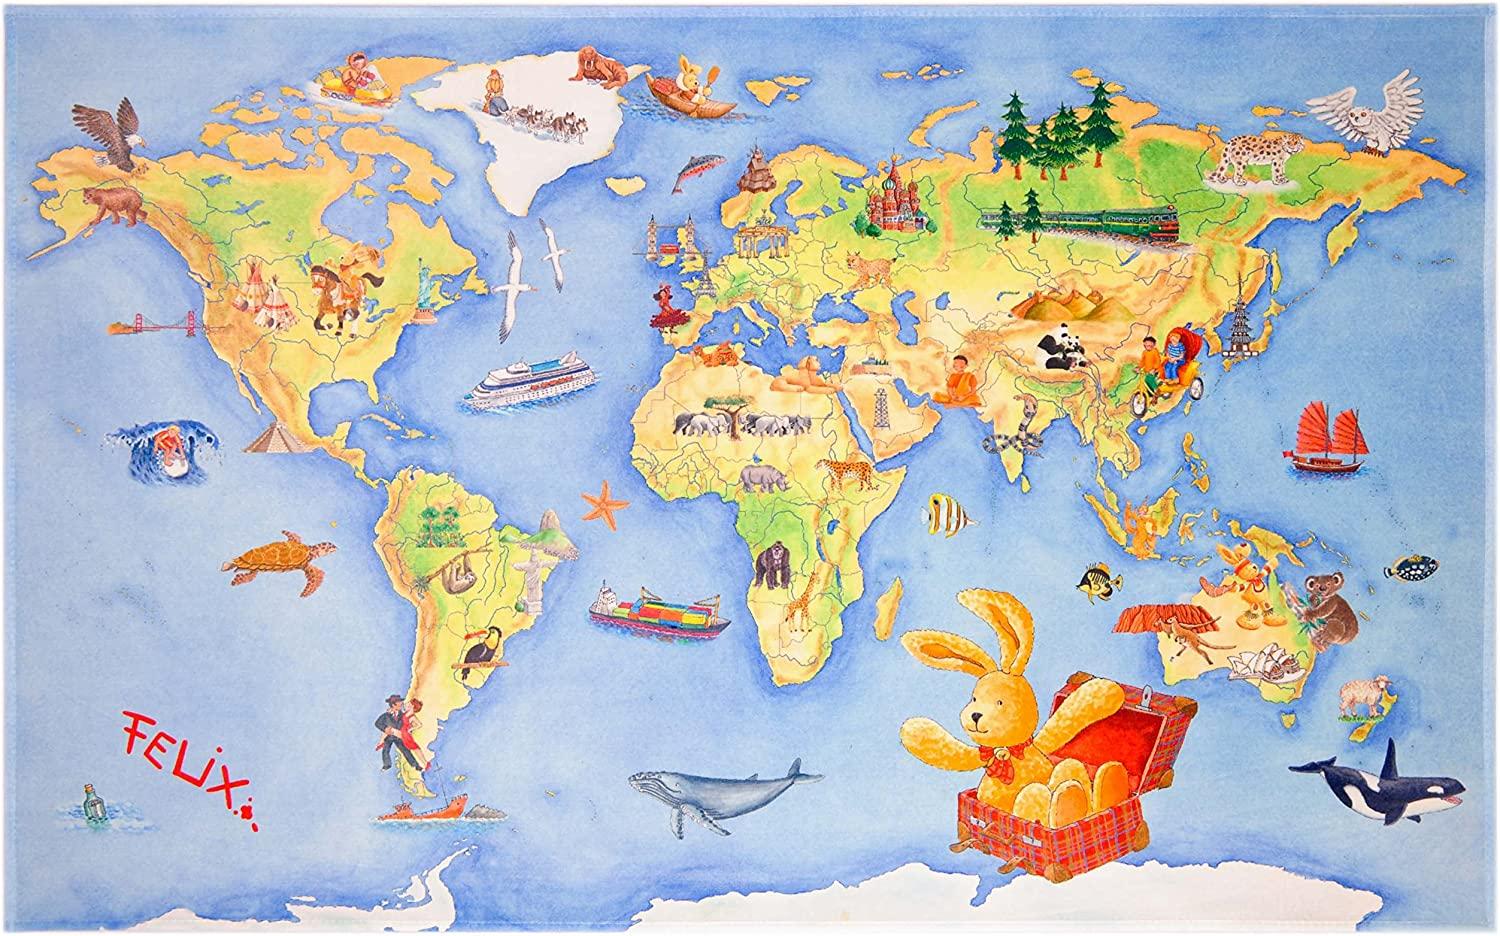 Kinderteppich 'FELiX Spiel und Lern Teppich' Die Weltkarte 140x200 cm Bild 1